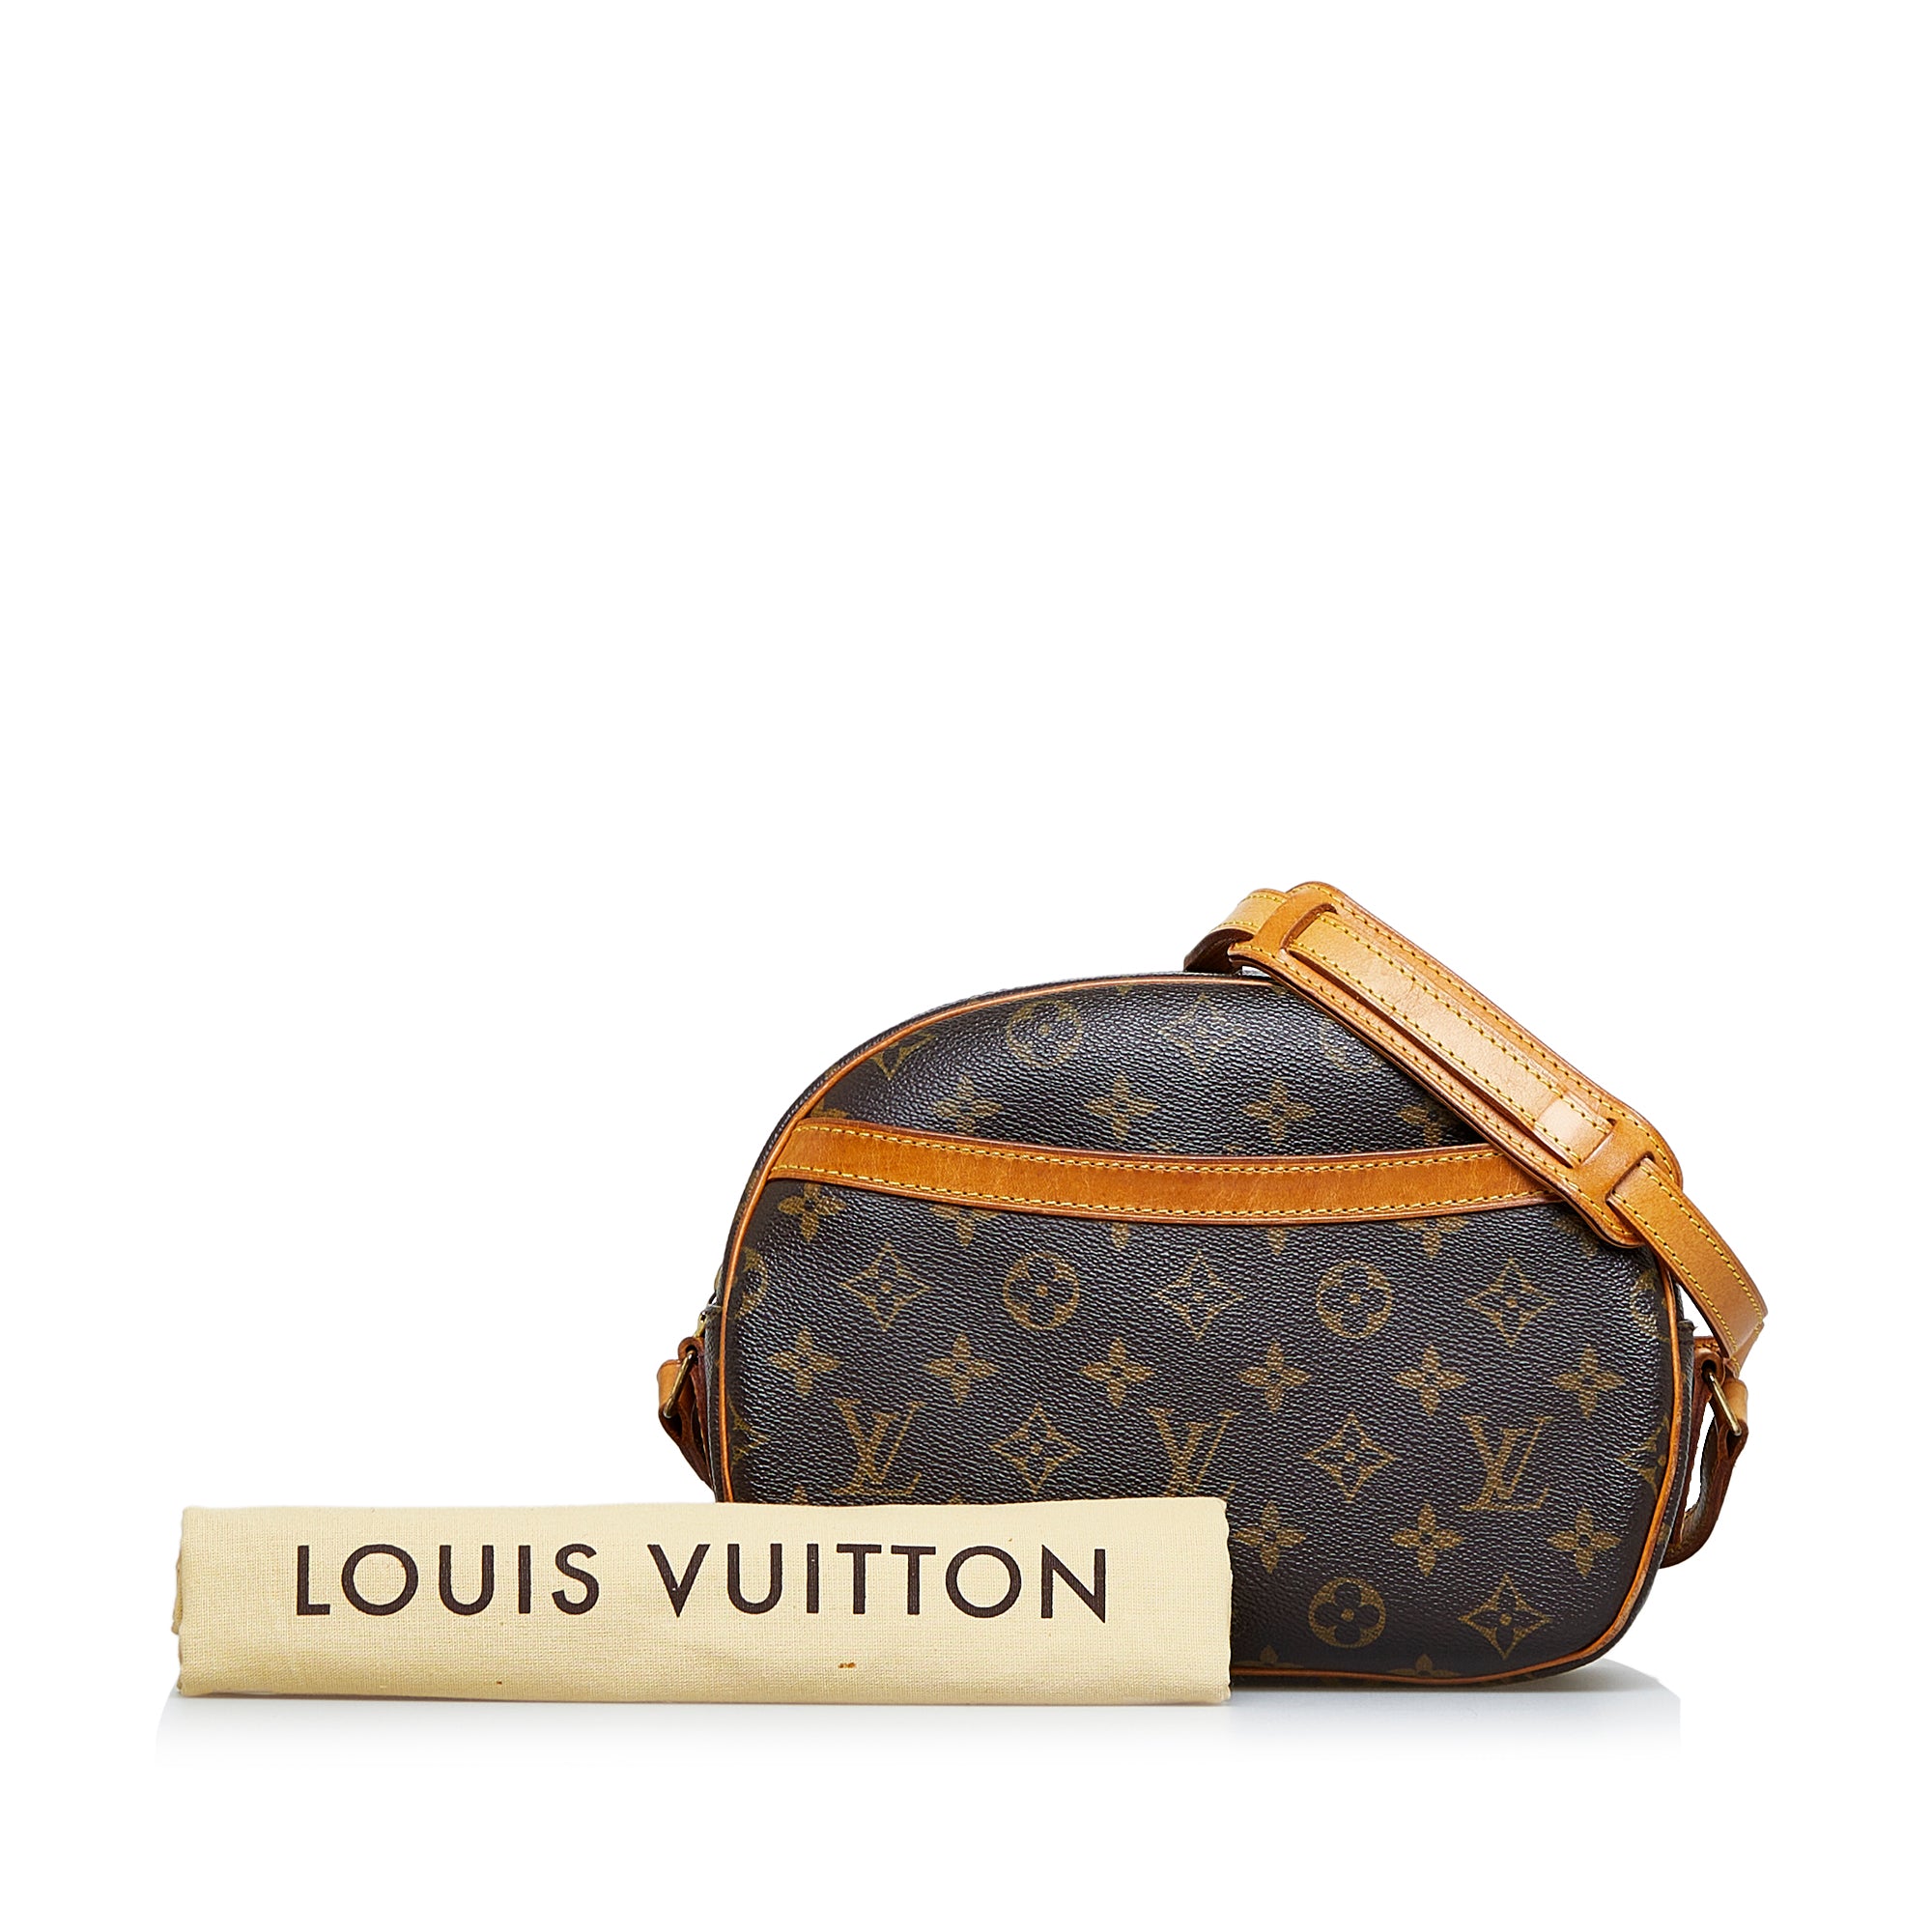 Louis Vuitton Blois review 